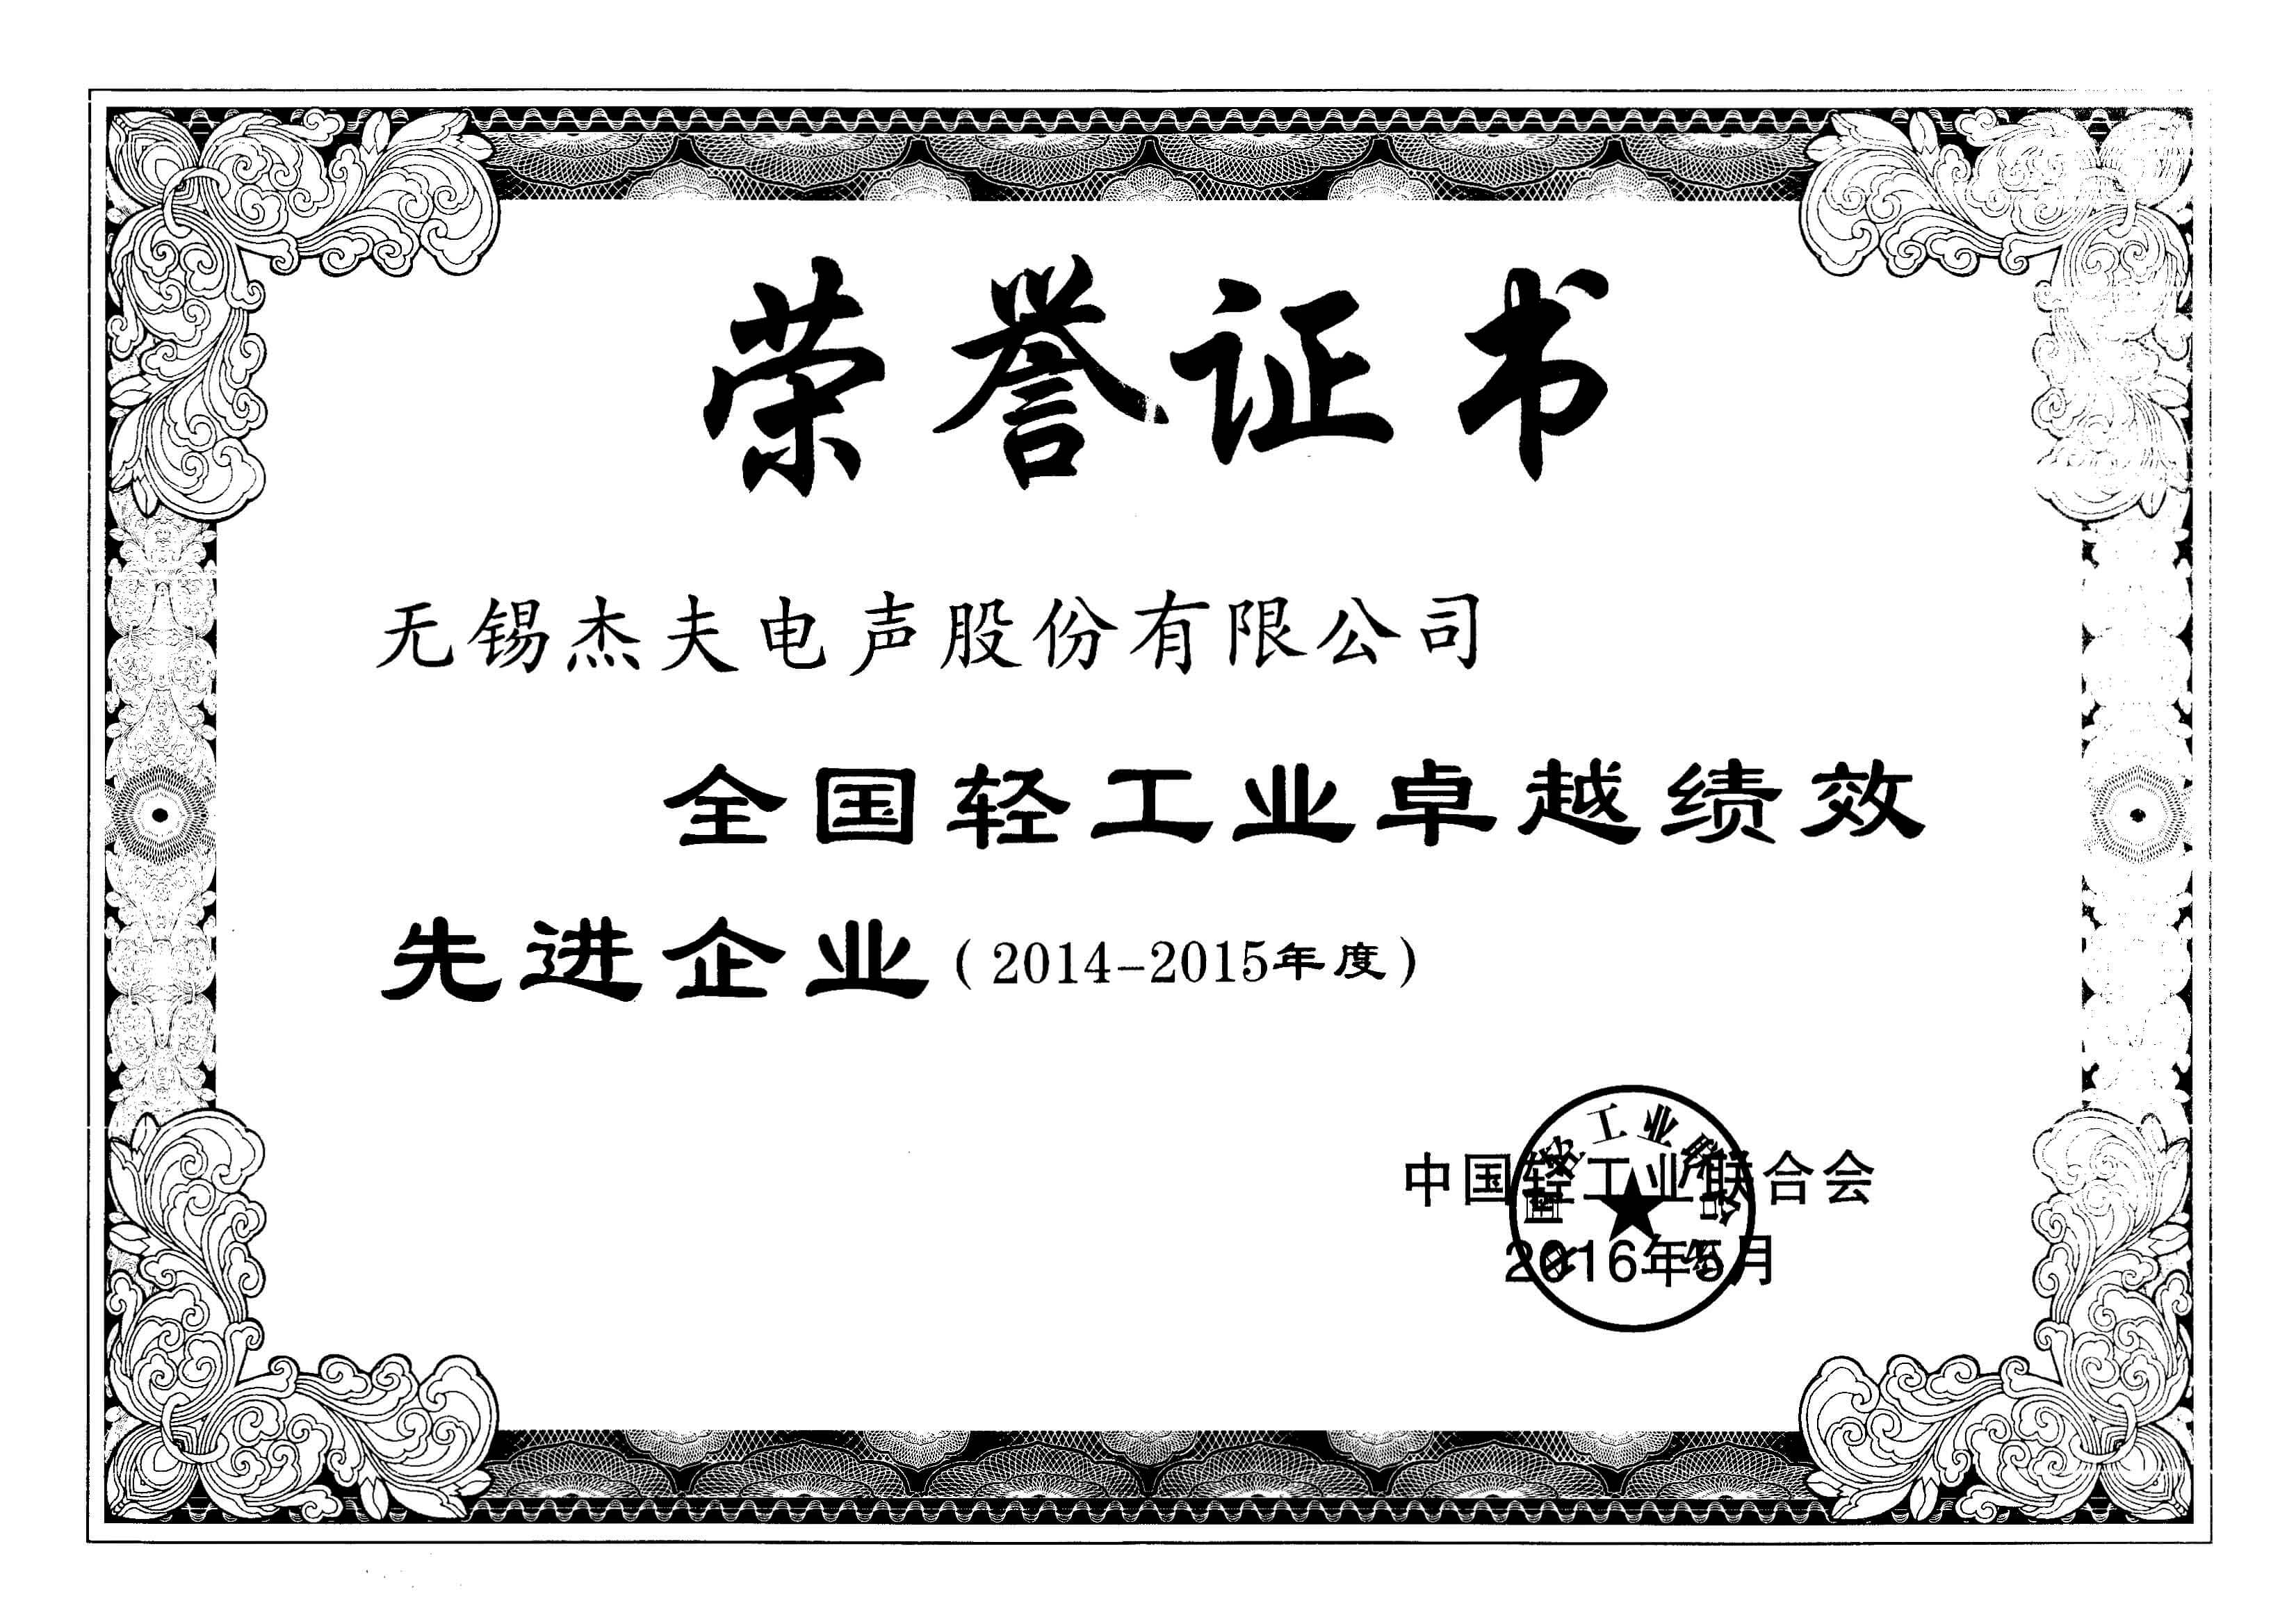 Certificate 10